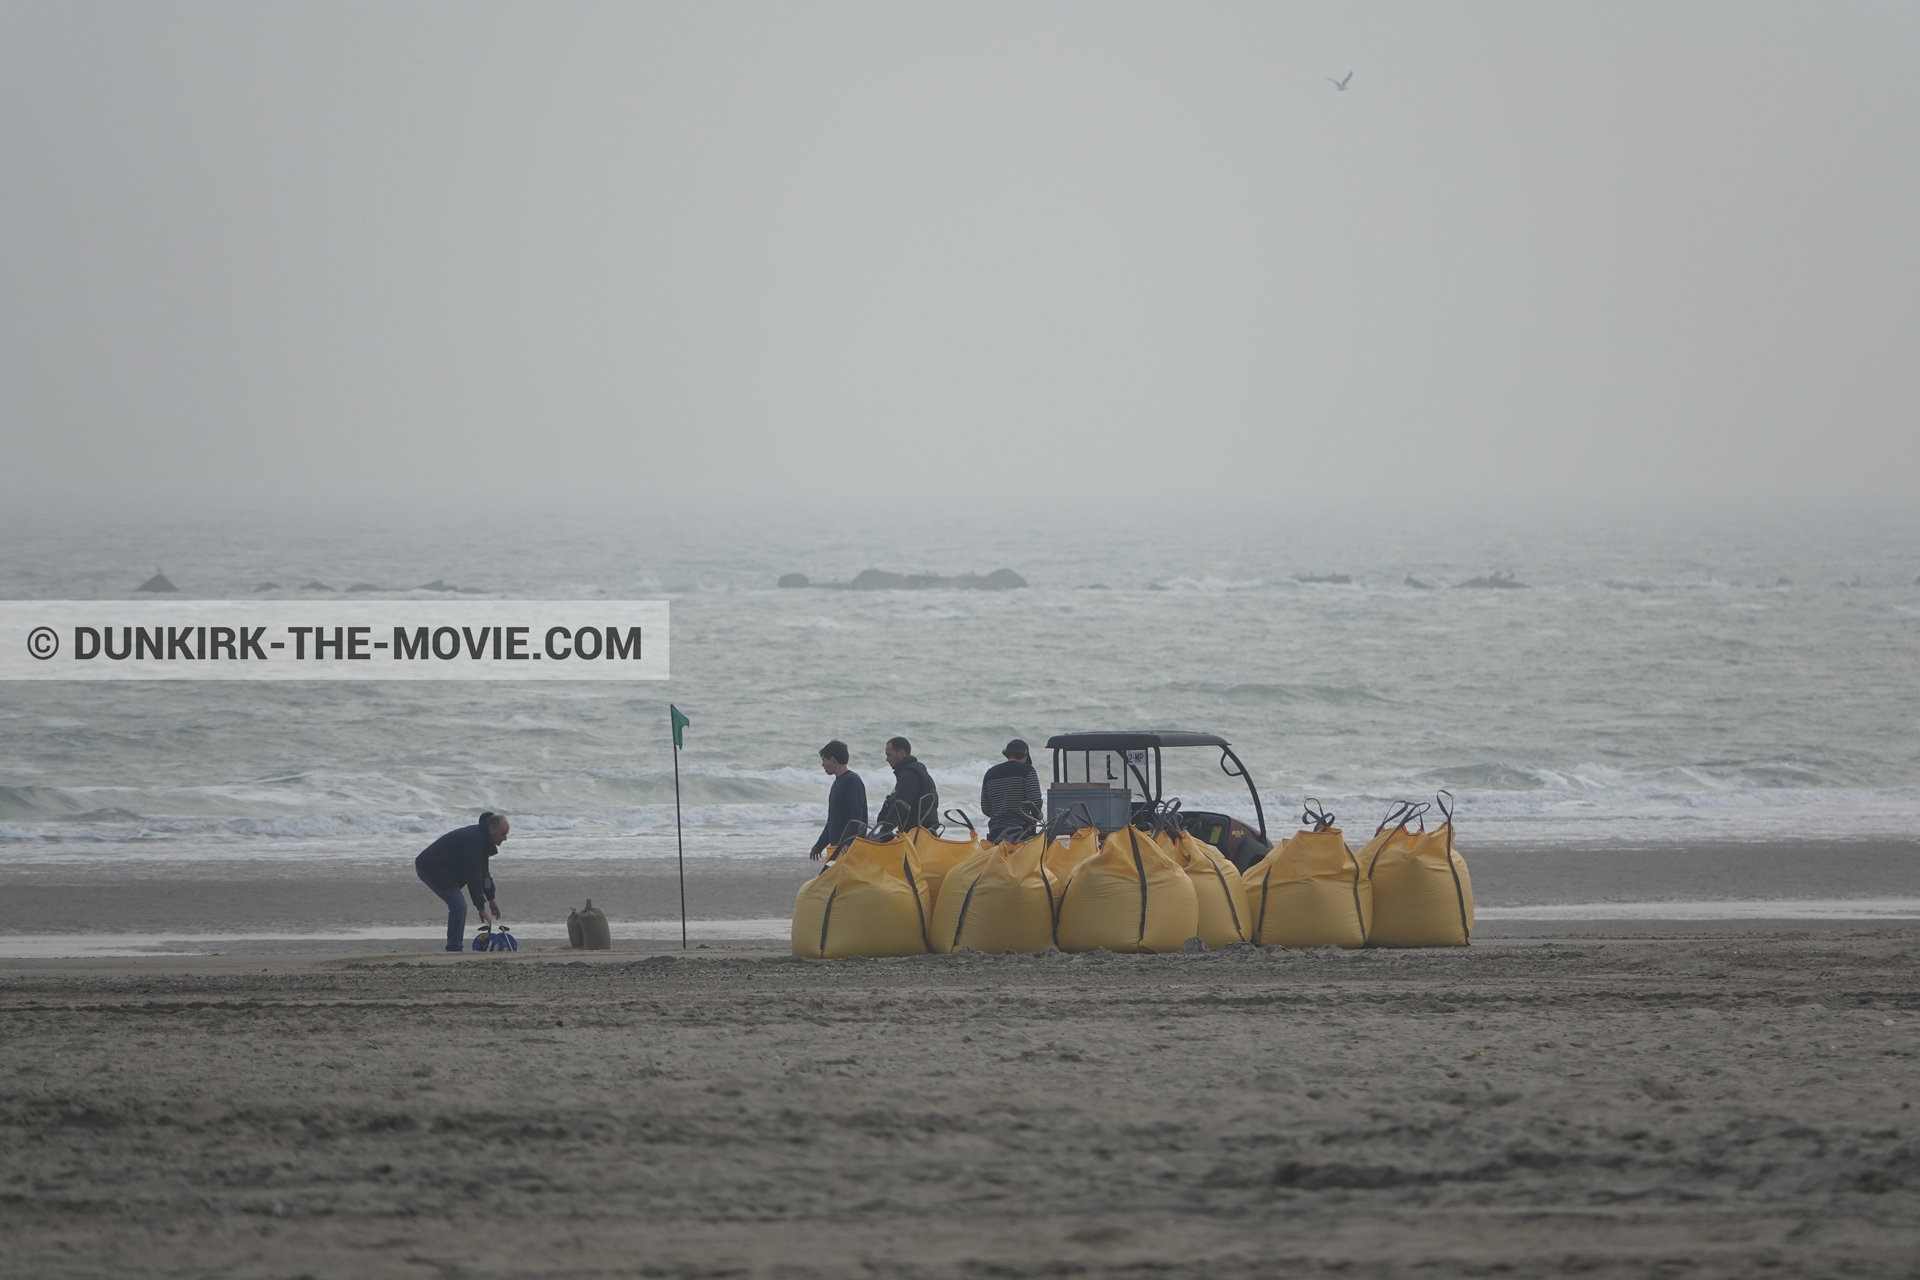 Fotos con Malo les Bains, playa, equipo técnica,  durante el rodaje de la película Dunkerque de Nolan